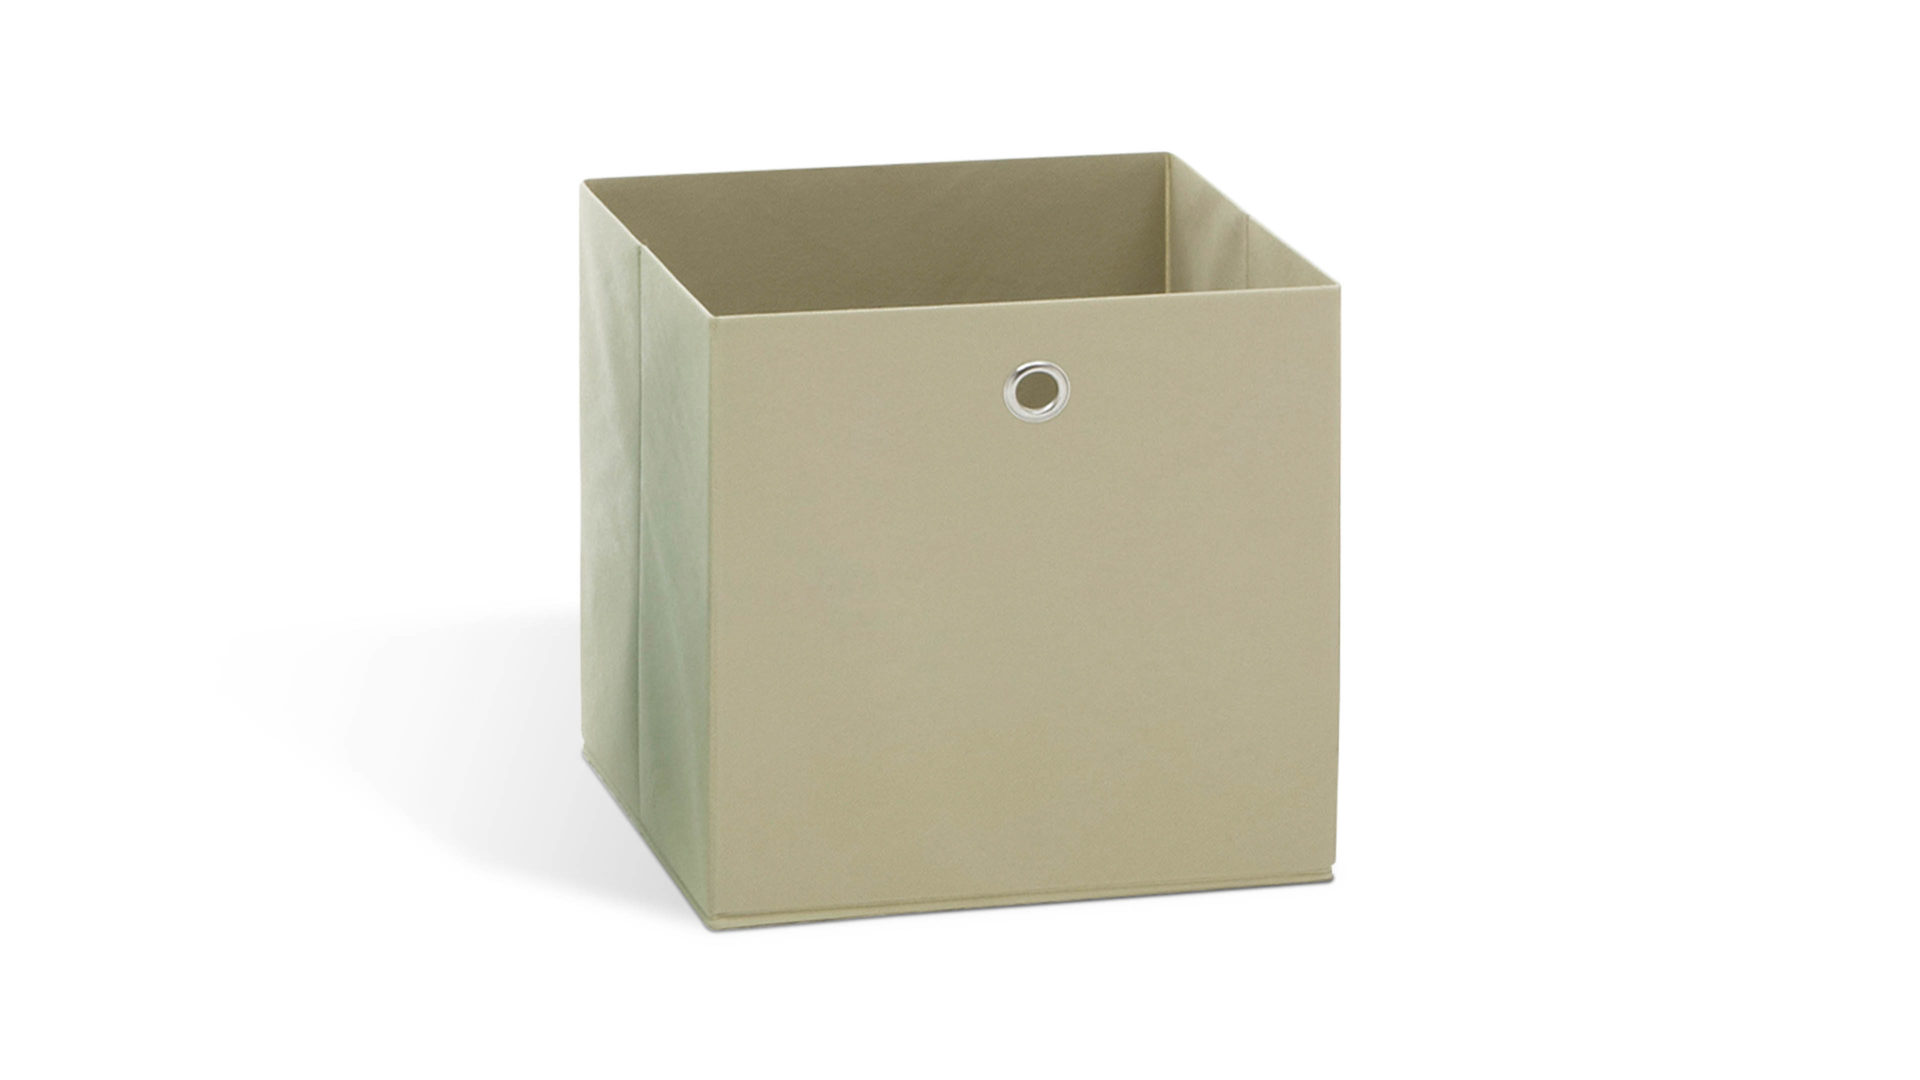 Faltbox Fmd furniture aus Stoff in Beige Faltbox ecrufarbenes, verstärktes Vlies - ca. 32 x 32 cm